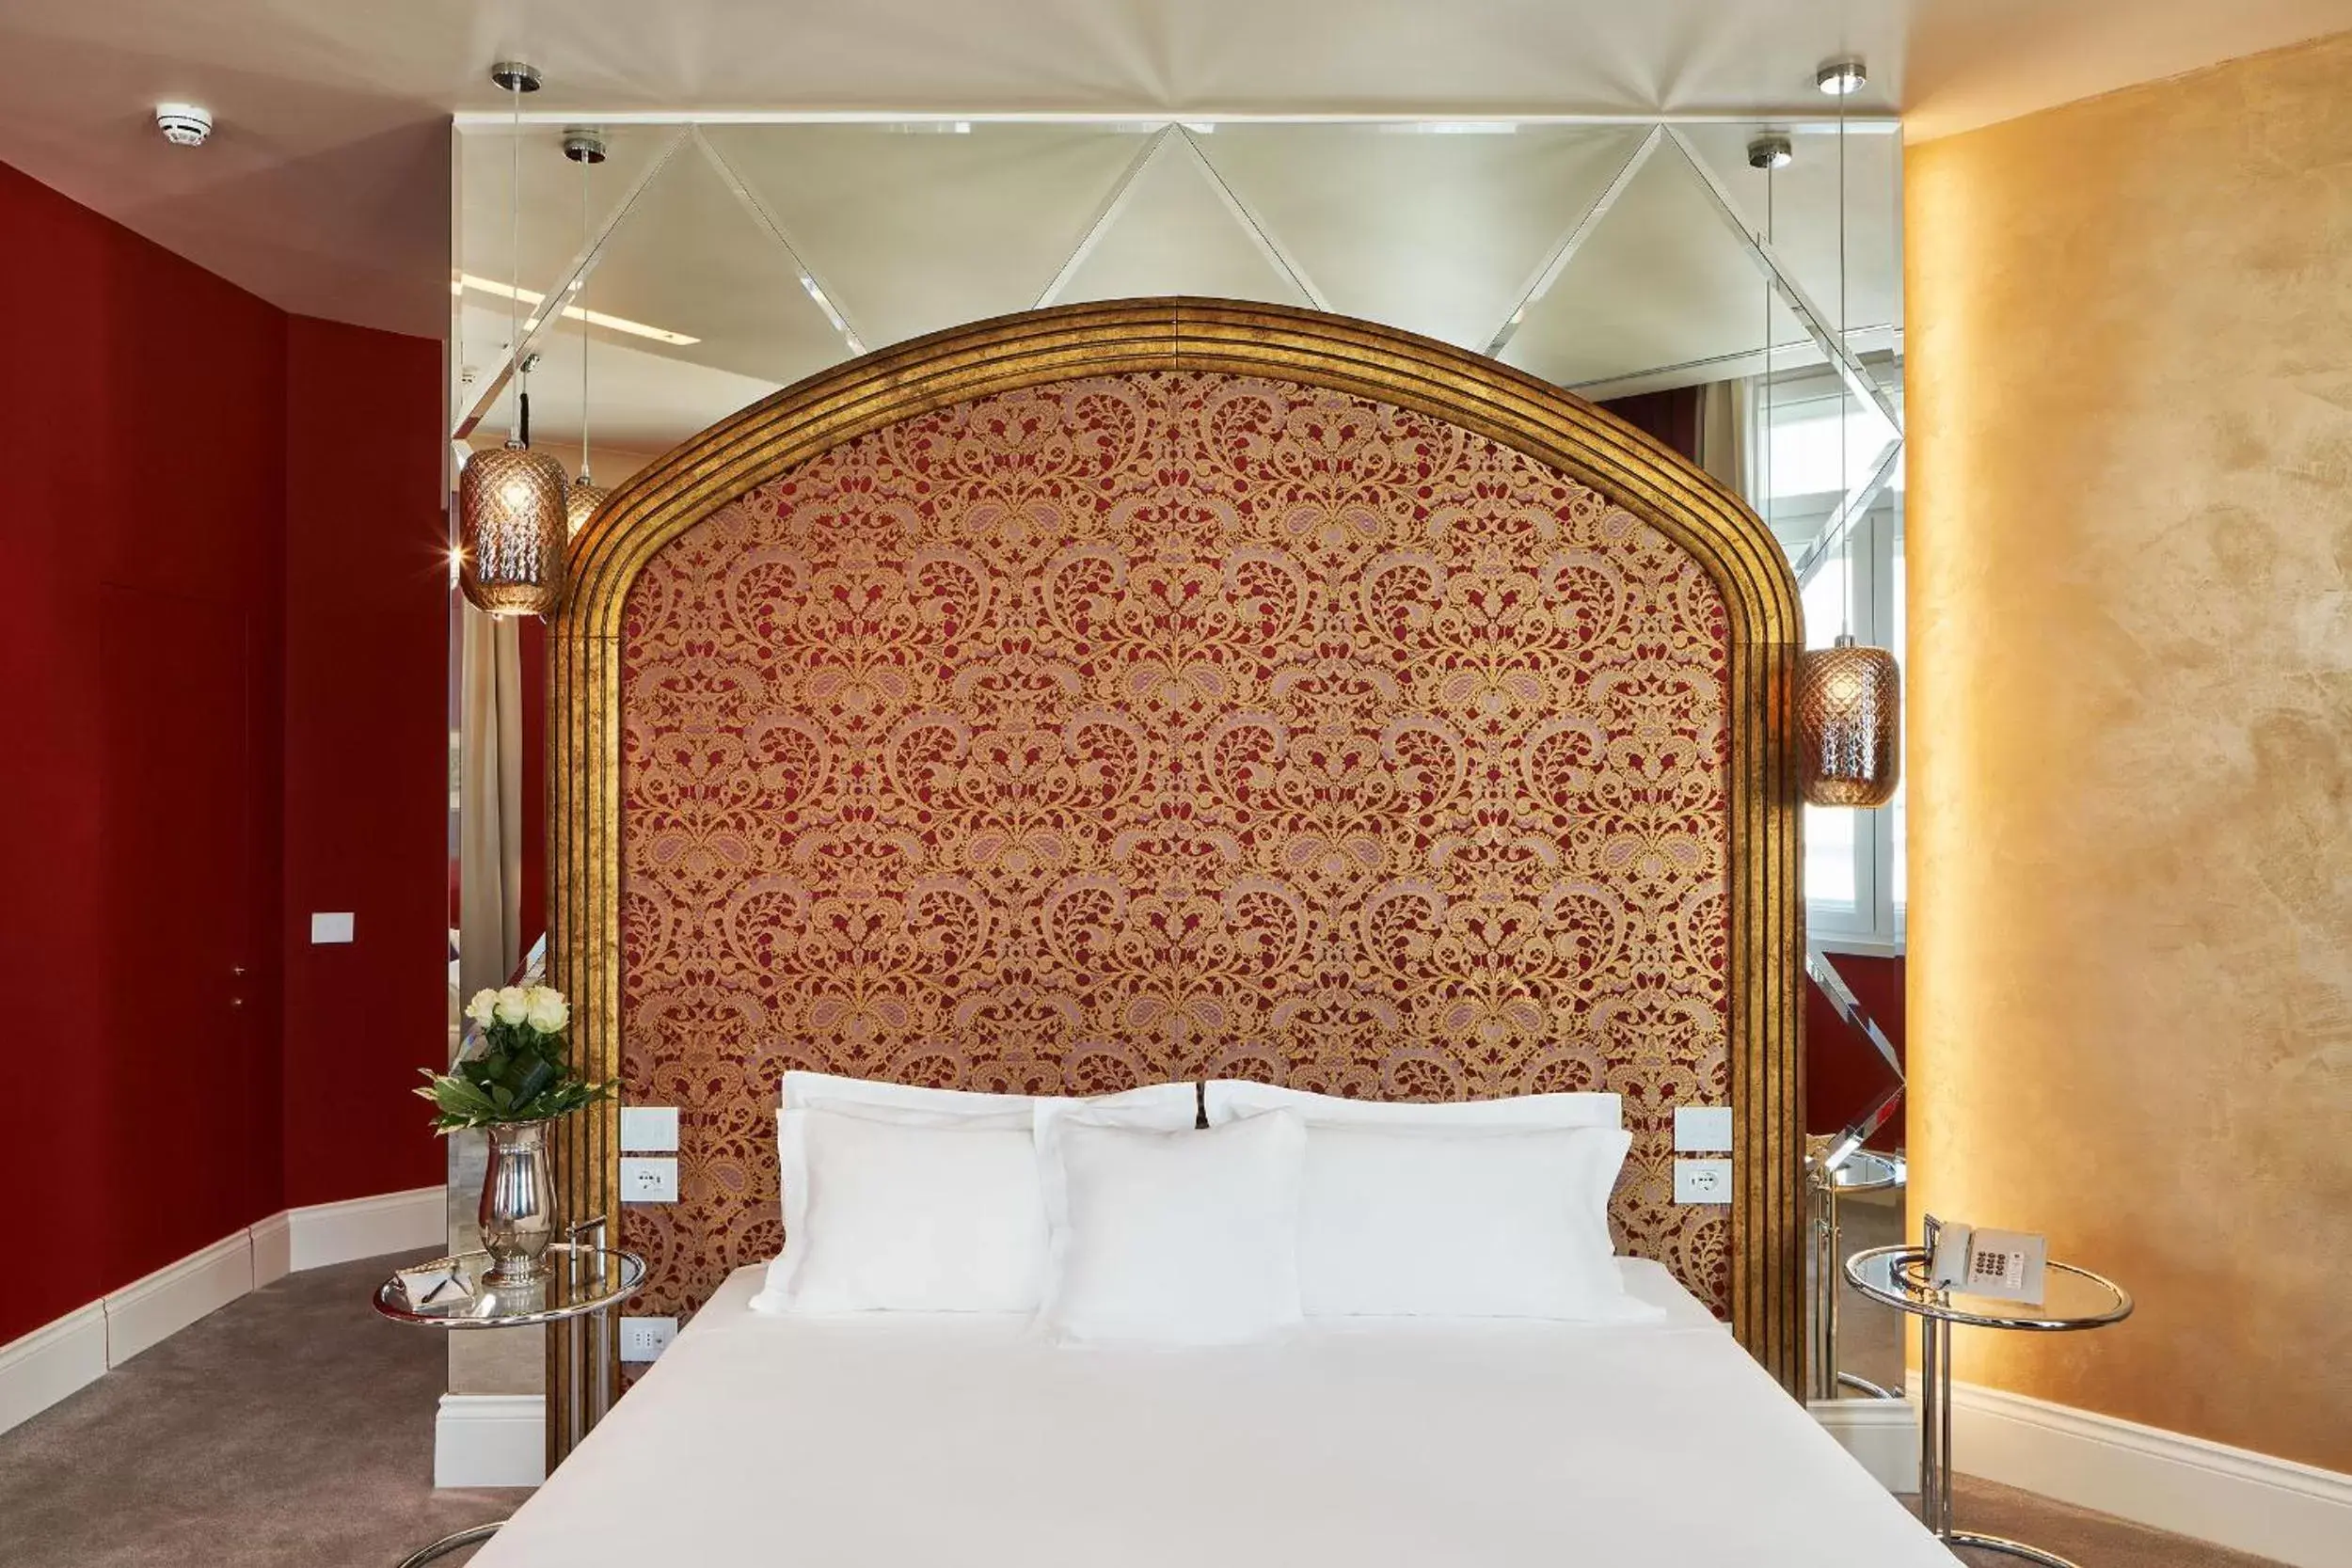 Decorative detail, Bed in Grand Hotel Duchi d'Aosta